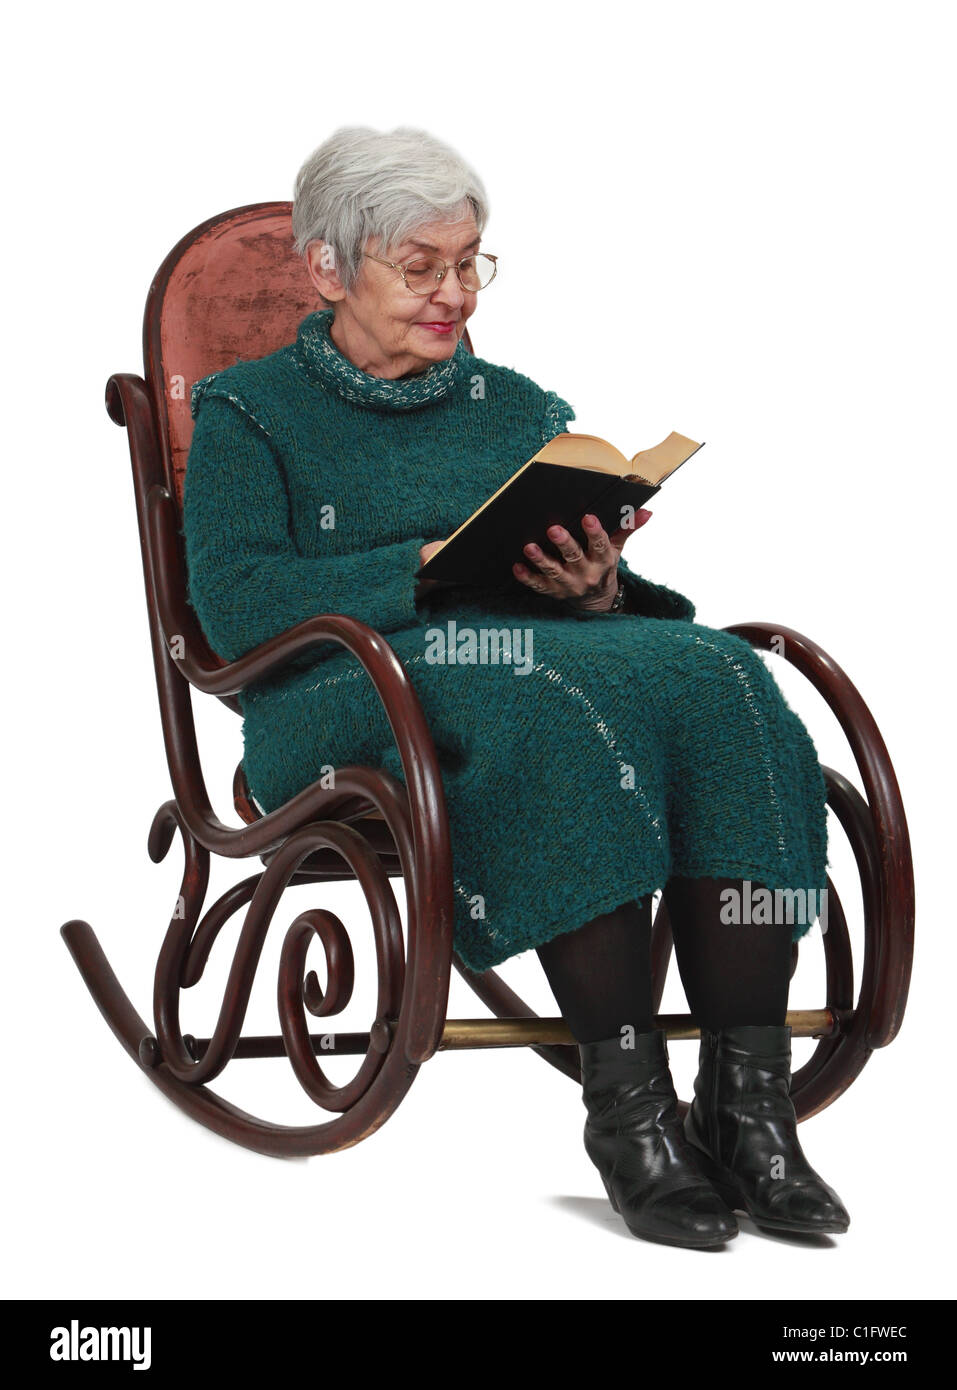 Alte Frau liest ein schwarzes Buch während der Sitzung in einer Wippe, isoliert auf einem weißen Hintergrund. Stockfoto